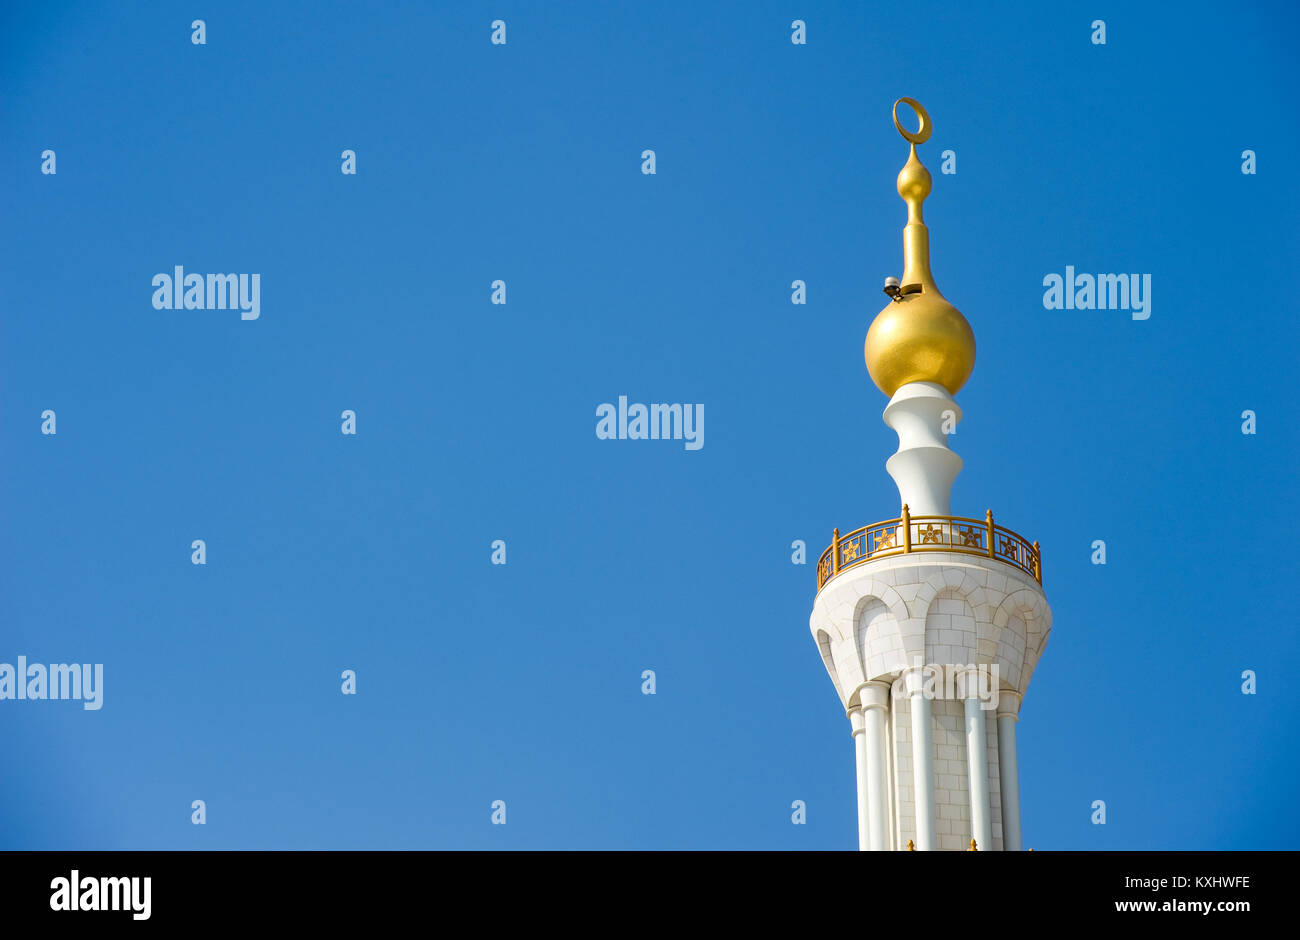 ABU DHABI, Emirati Arabi Uniti - Dic 28, 2017: parte del tetto dalla Moschea Sheikh Zayed di Abu Dhabi. Si tratta della più grande moschea del paese. Foto Stock